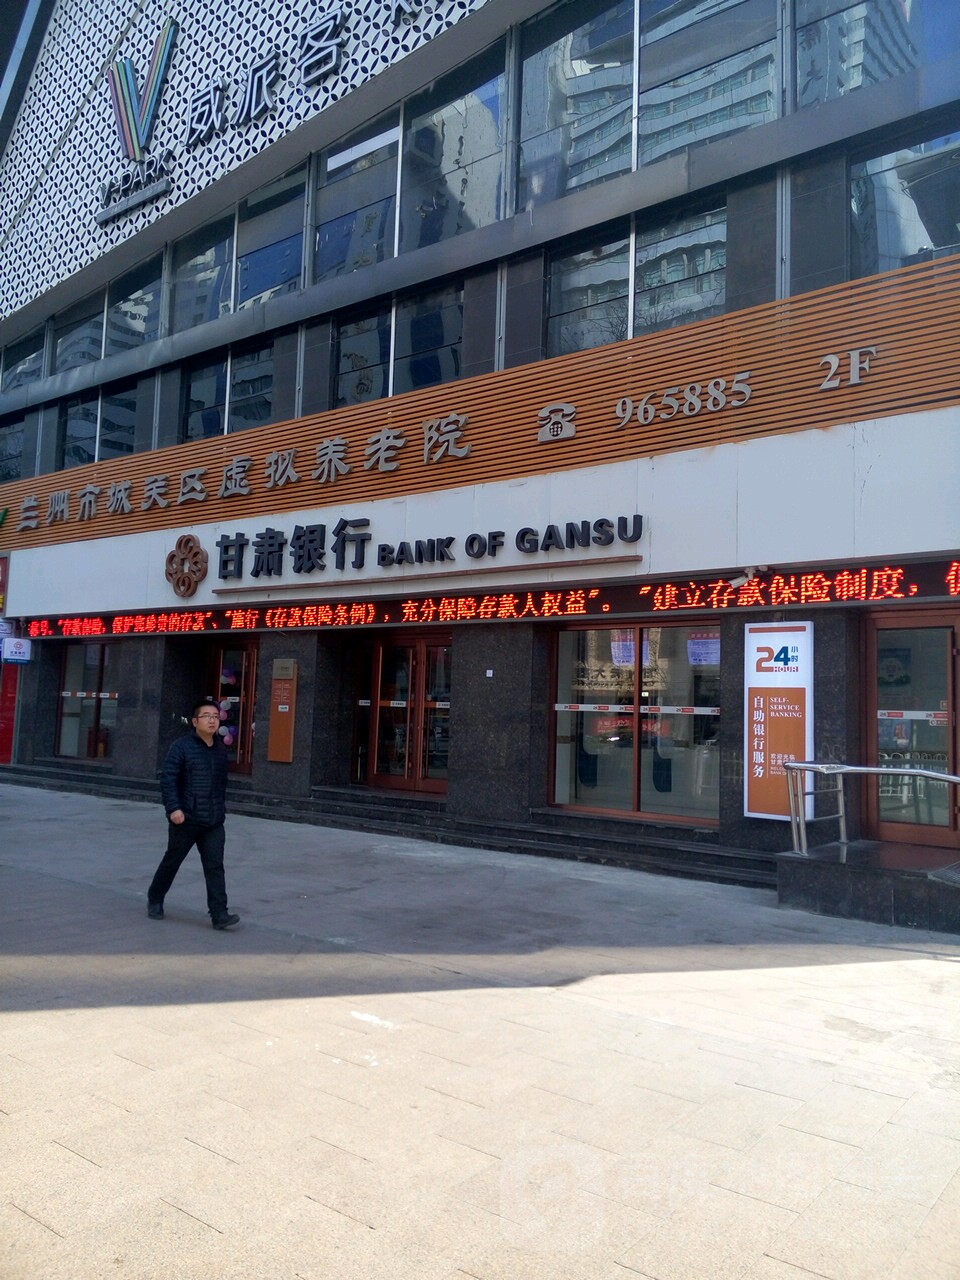 甘肅銀行24小時自助銀行服務(慶陽路支行)